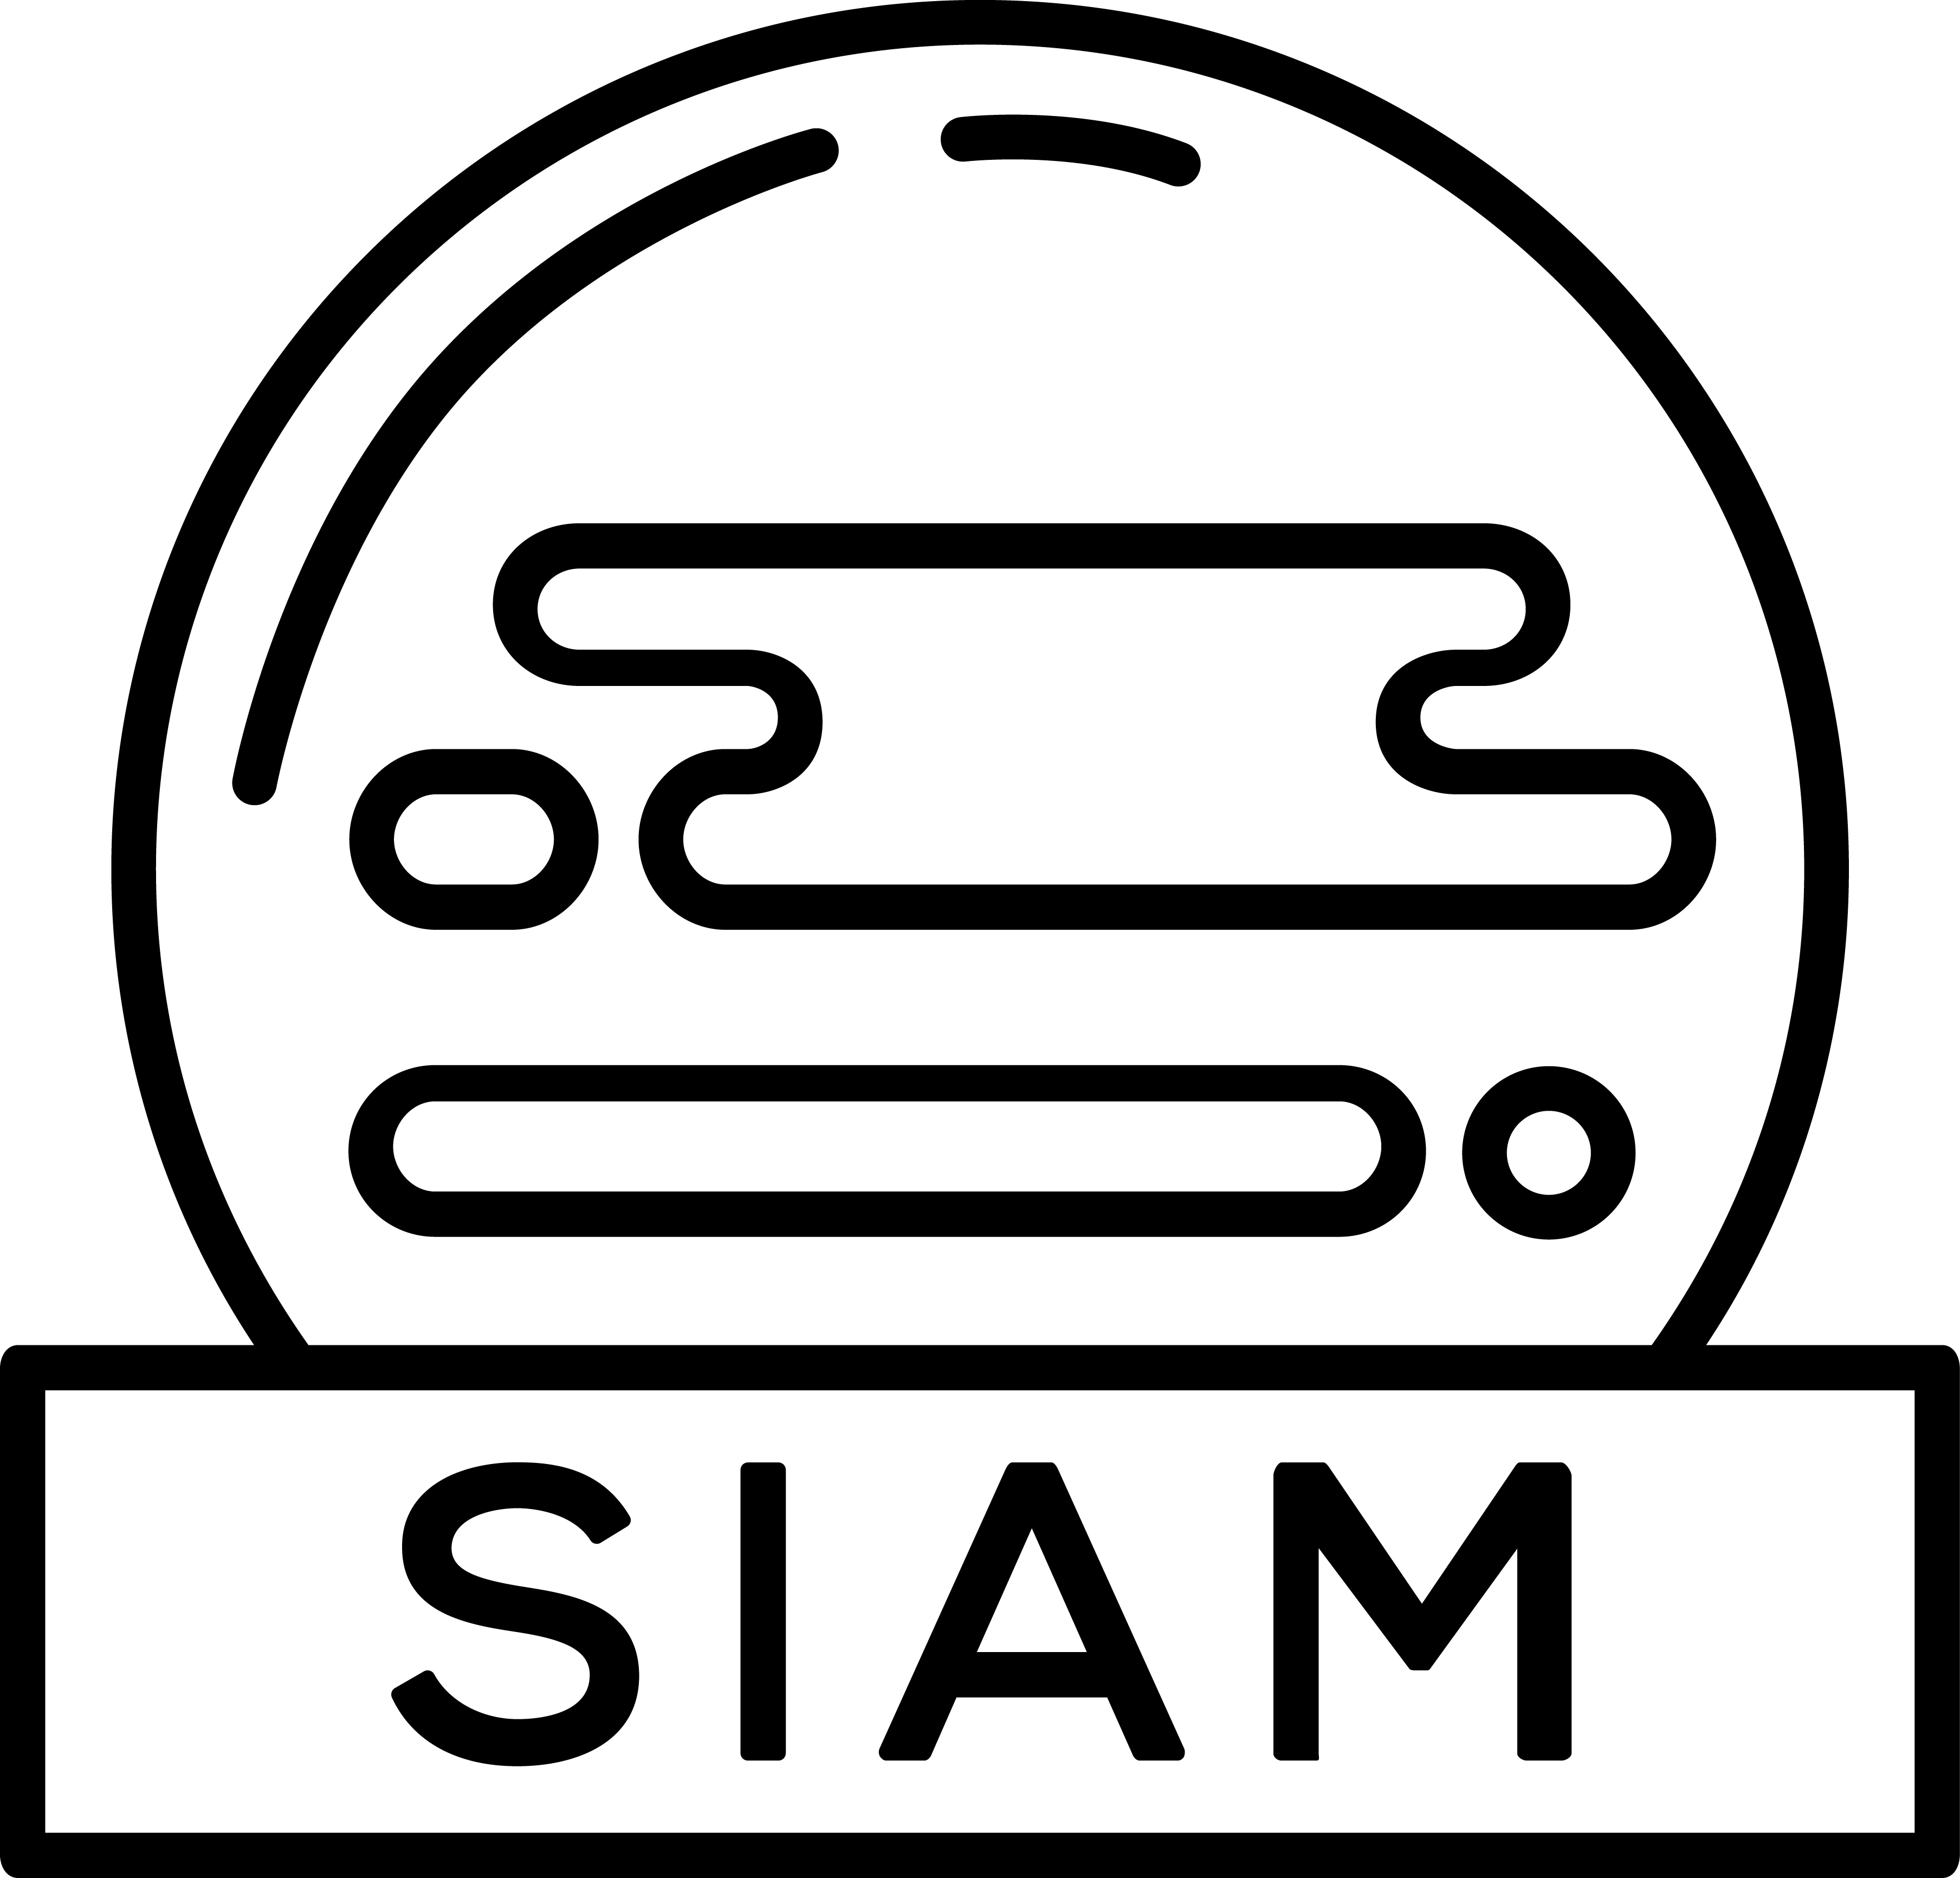 2019-01/siam_logo.jpg